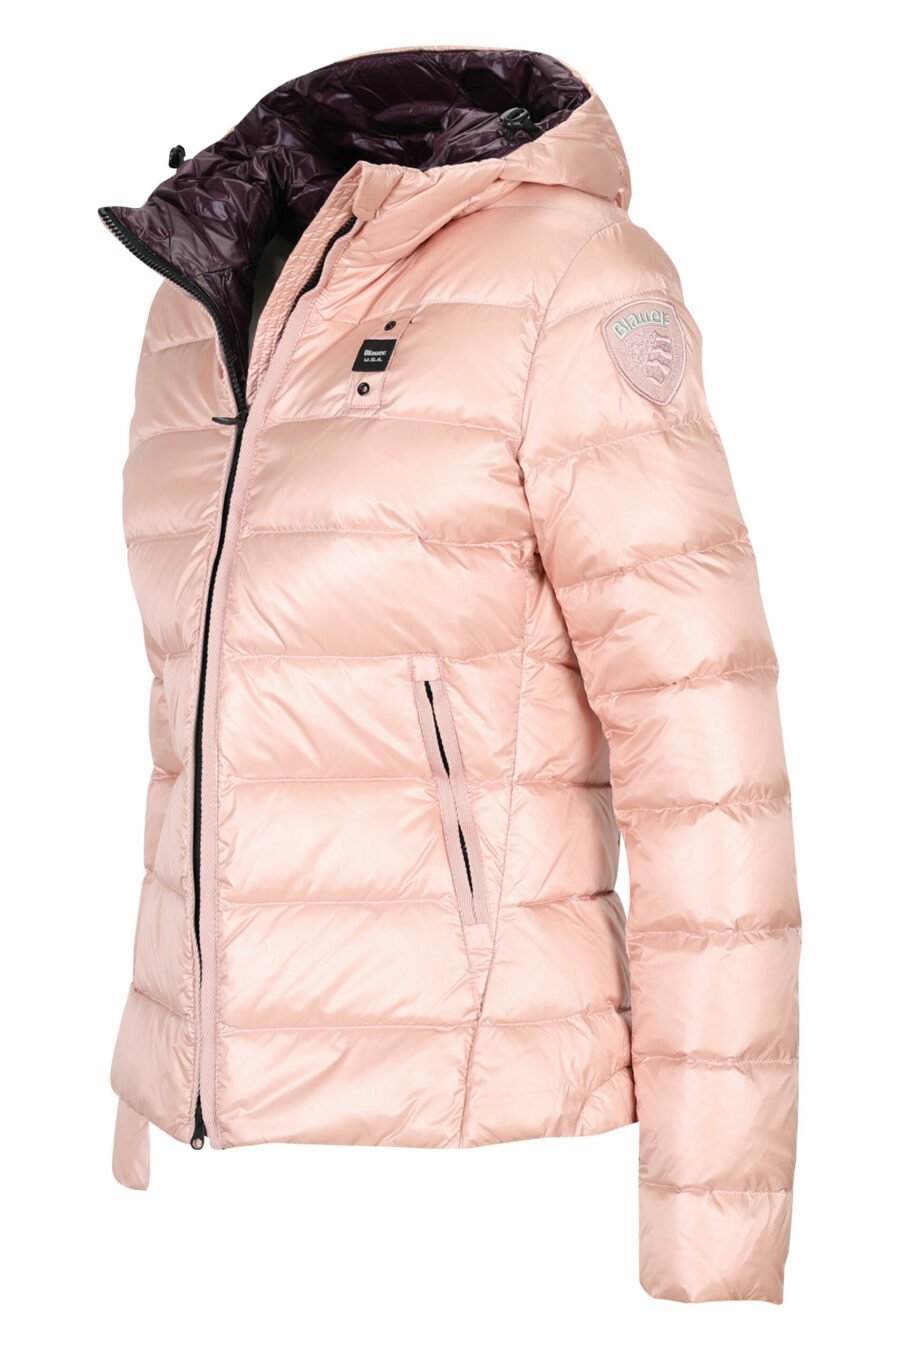 Veste à capuche rose pâle à doublure droite avec intérieur violet et écusson du logo - 8058610673321 2 à l'échelle